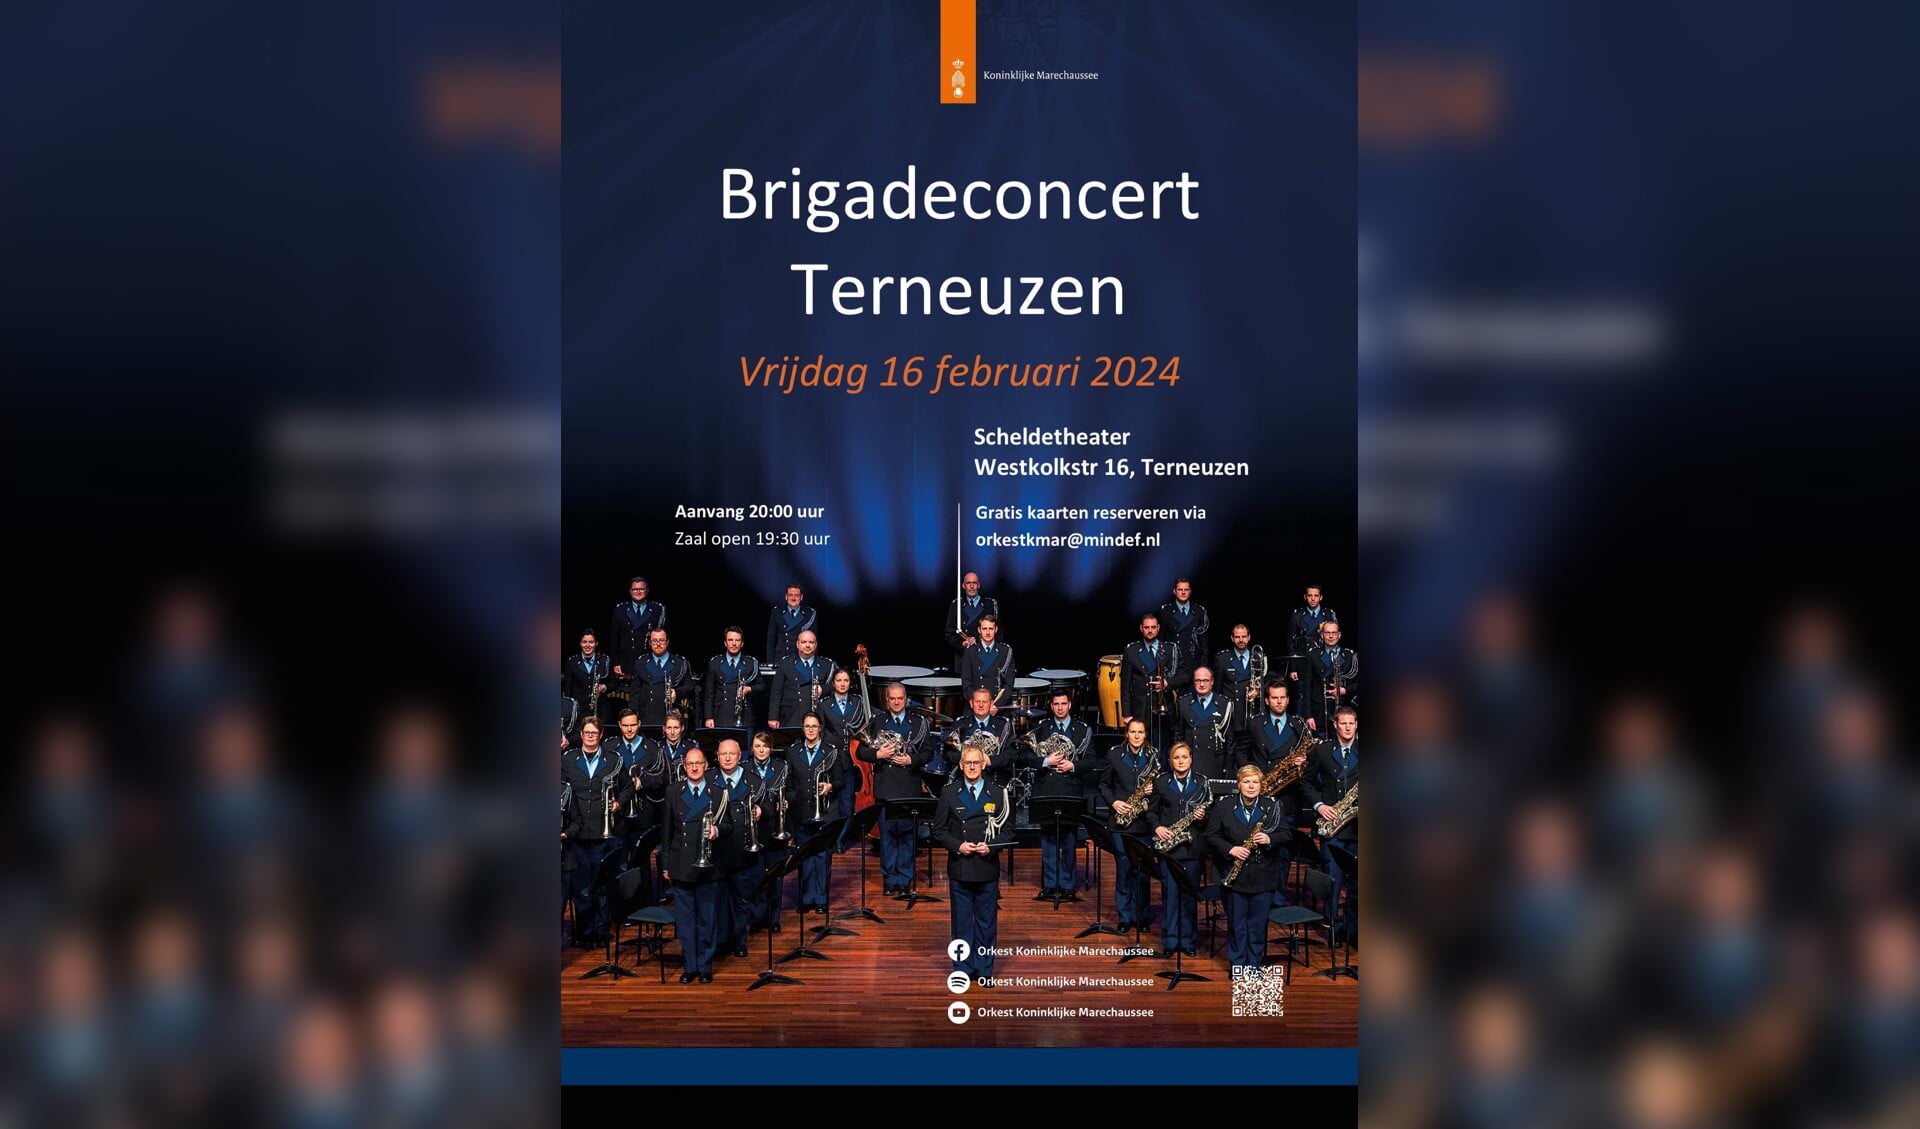 Het concert is vrij toegankelijk maar men dient wel een toegangsbewijs te bestellen via orkestkmar@mindef.nl.